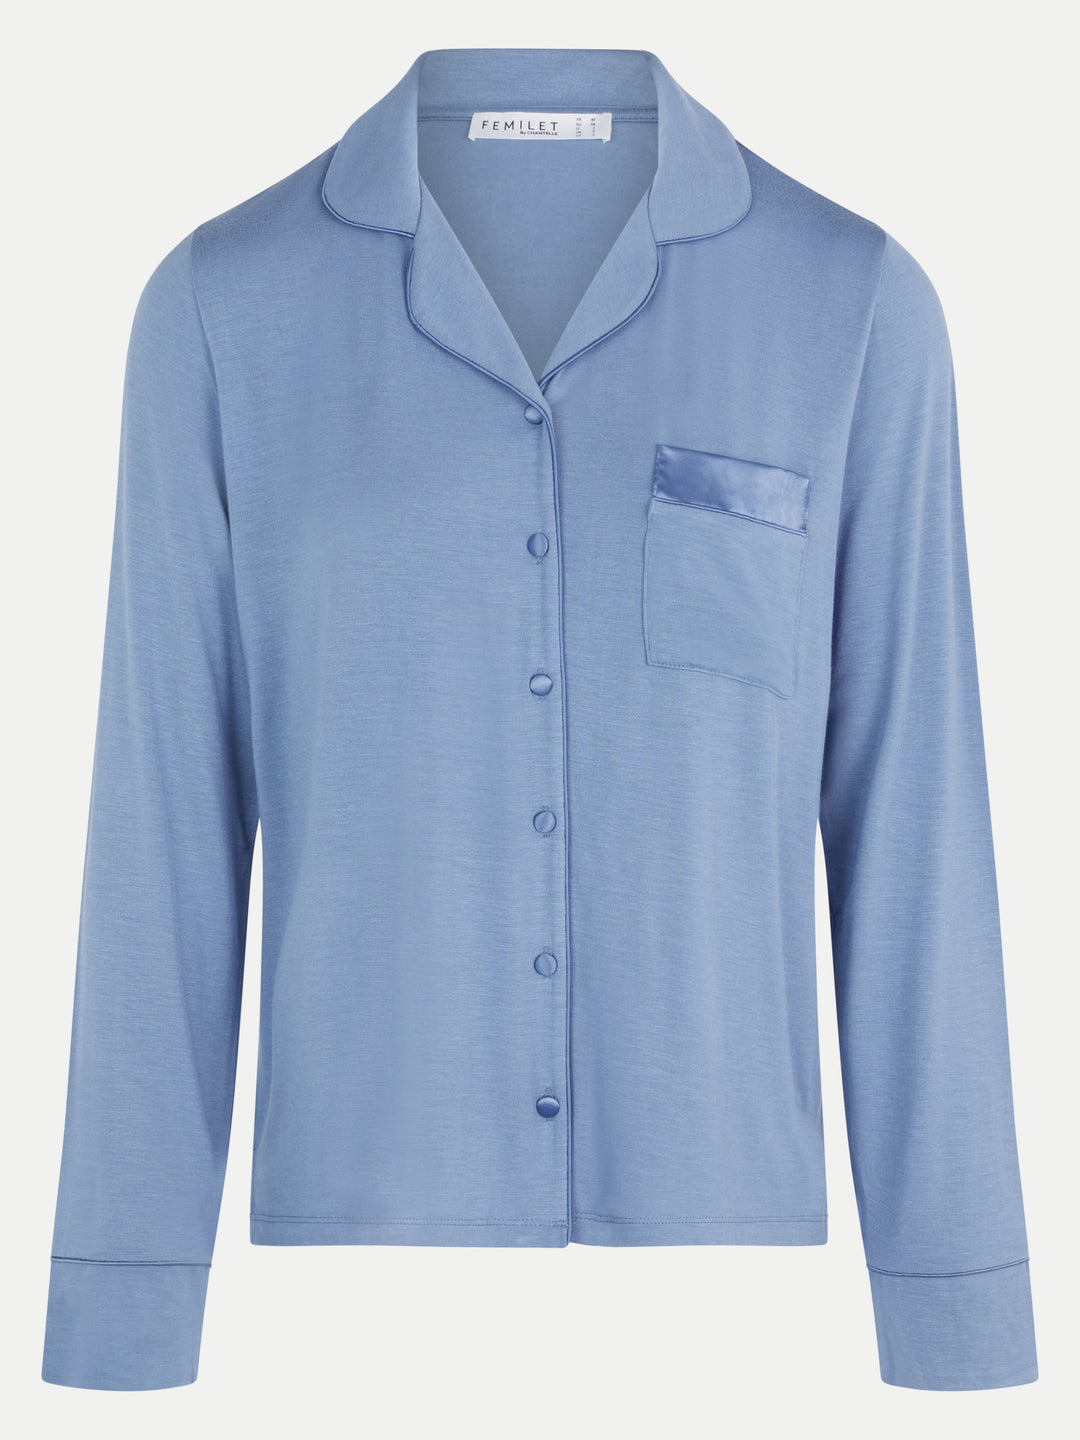 Femilet - Daisy Shirt Long Sleeves Borneo Blue